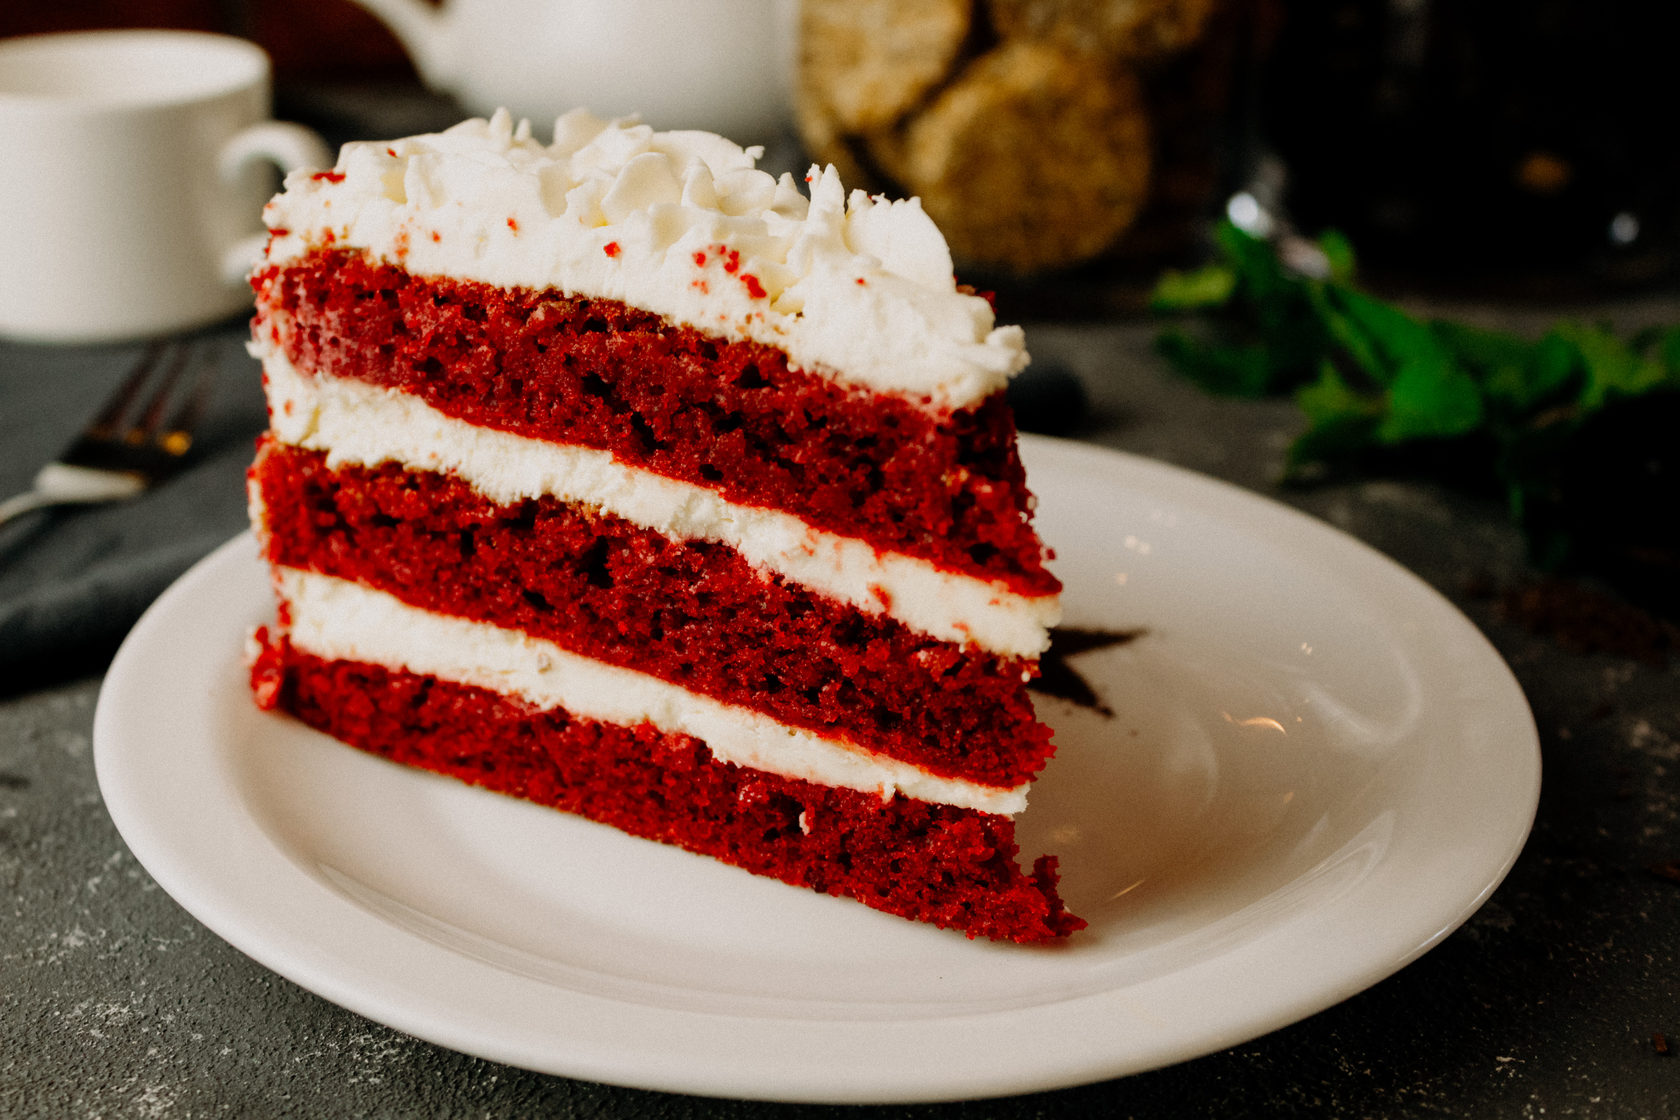 Торт красный бархат рецепт с фото пошагово в домашних условиях оригинал